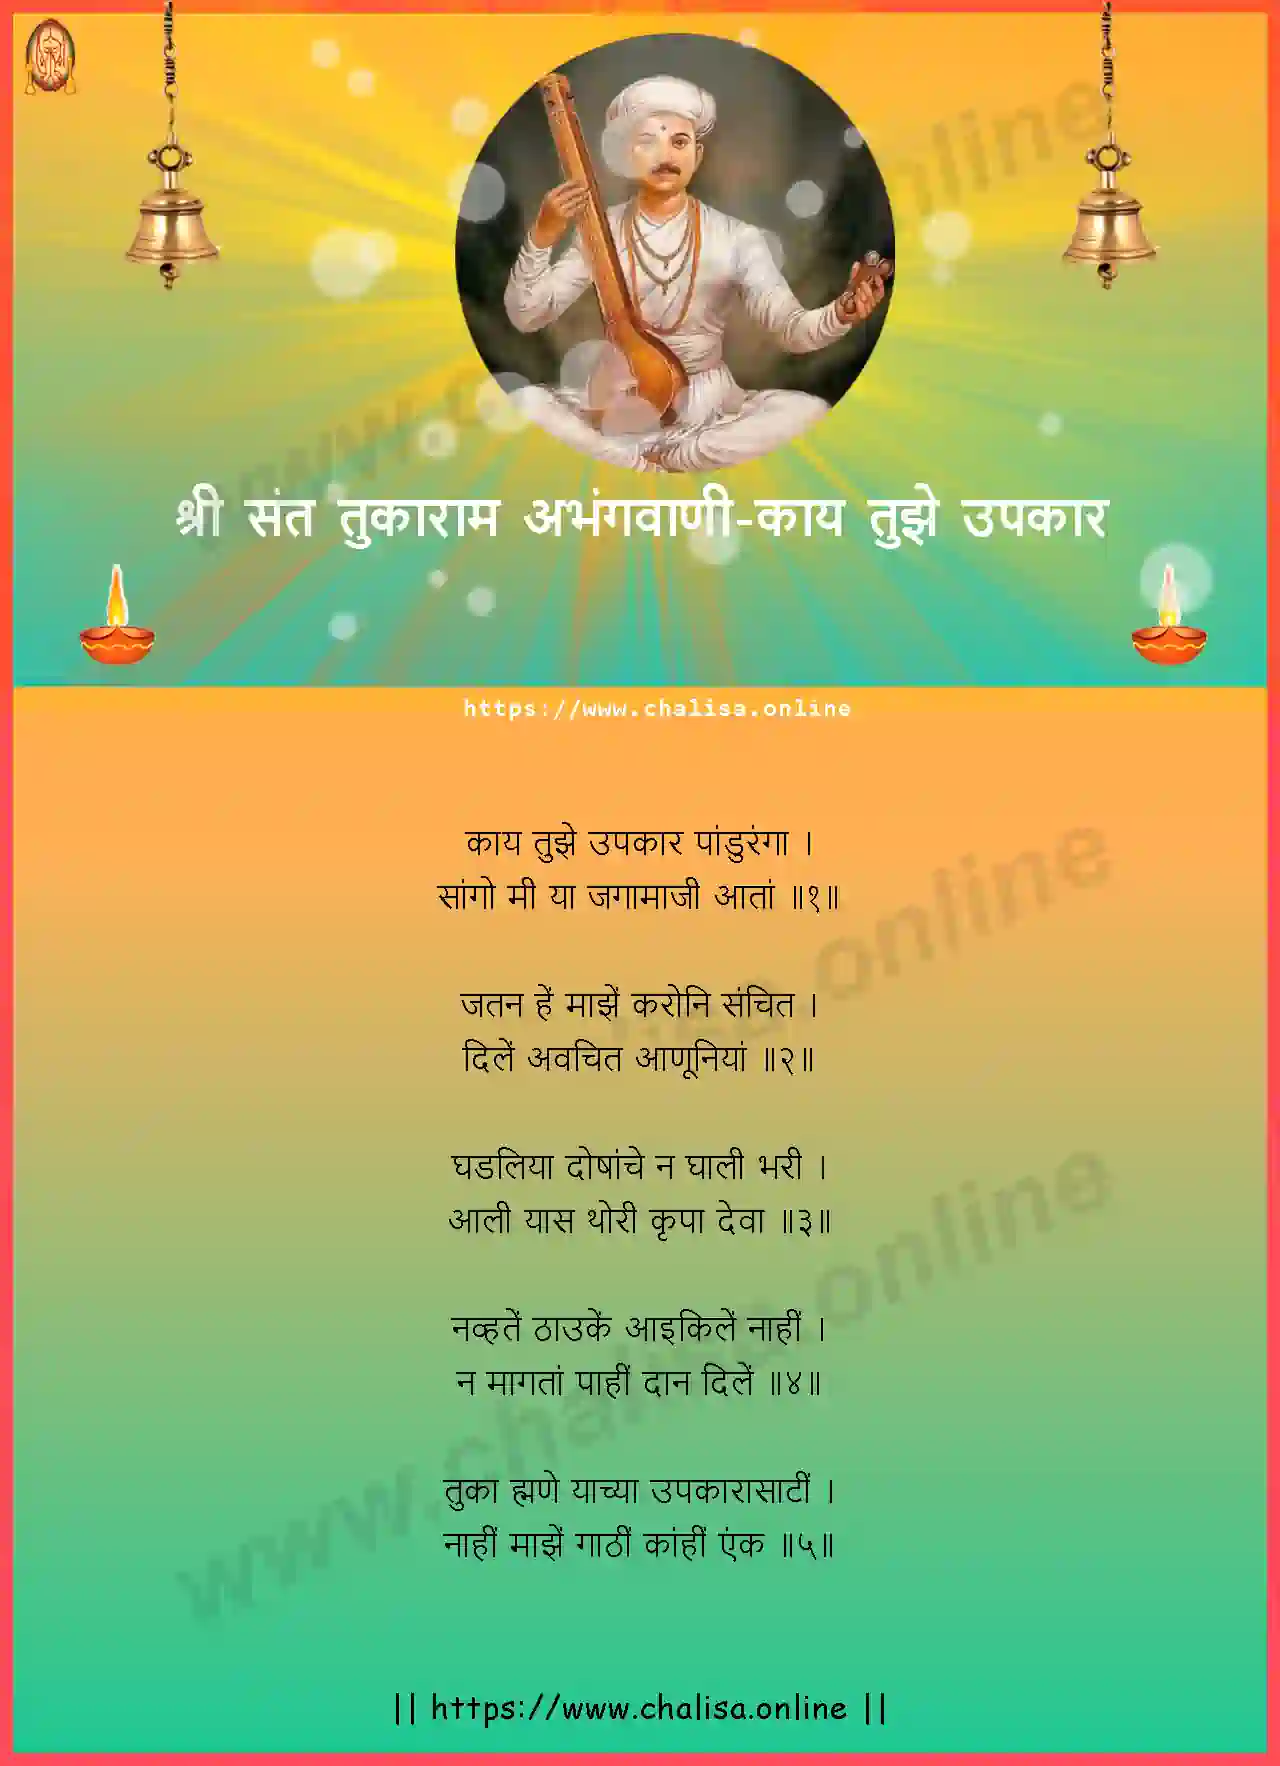 kaay-tujhe-upkar-shri-sant-tukaram-abhang-marathi-lyrics-download